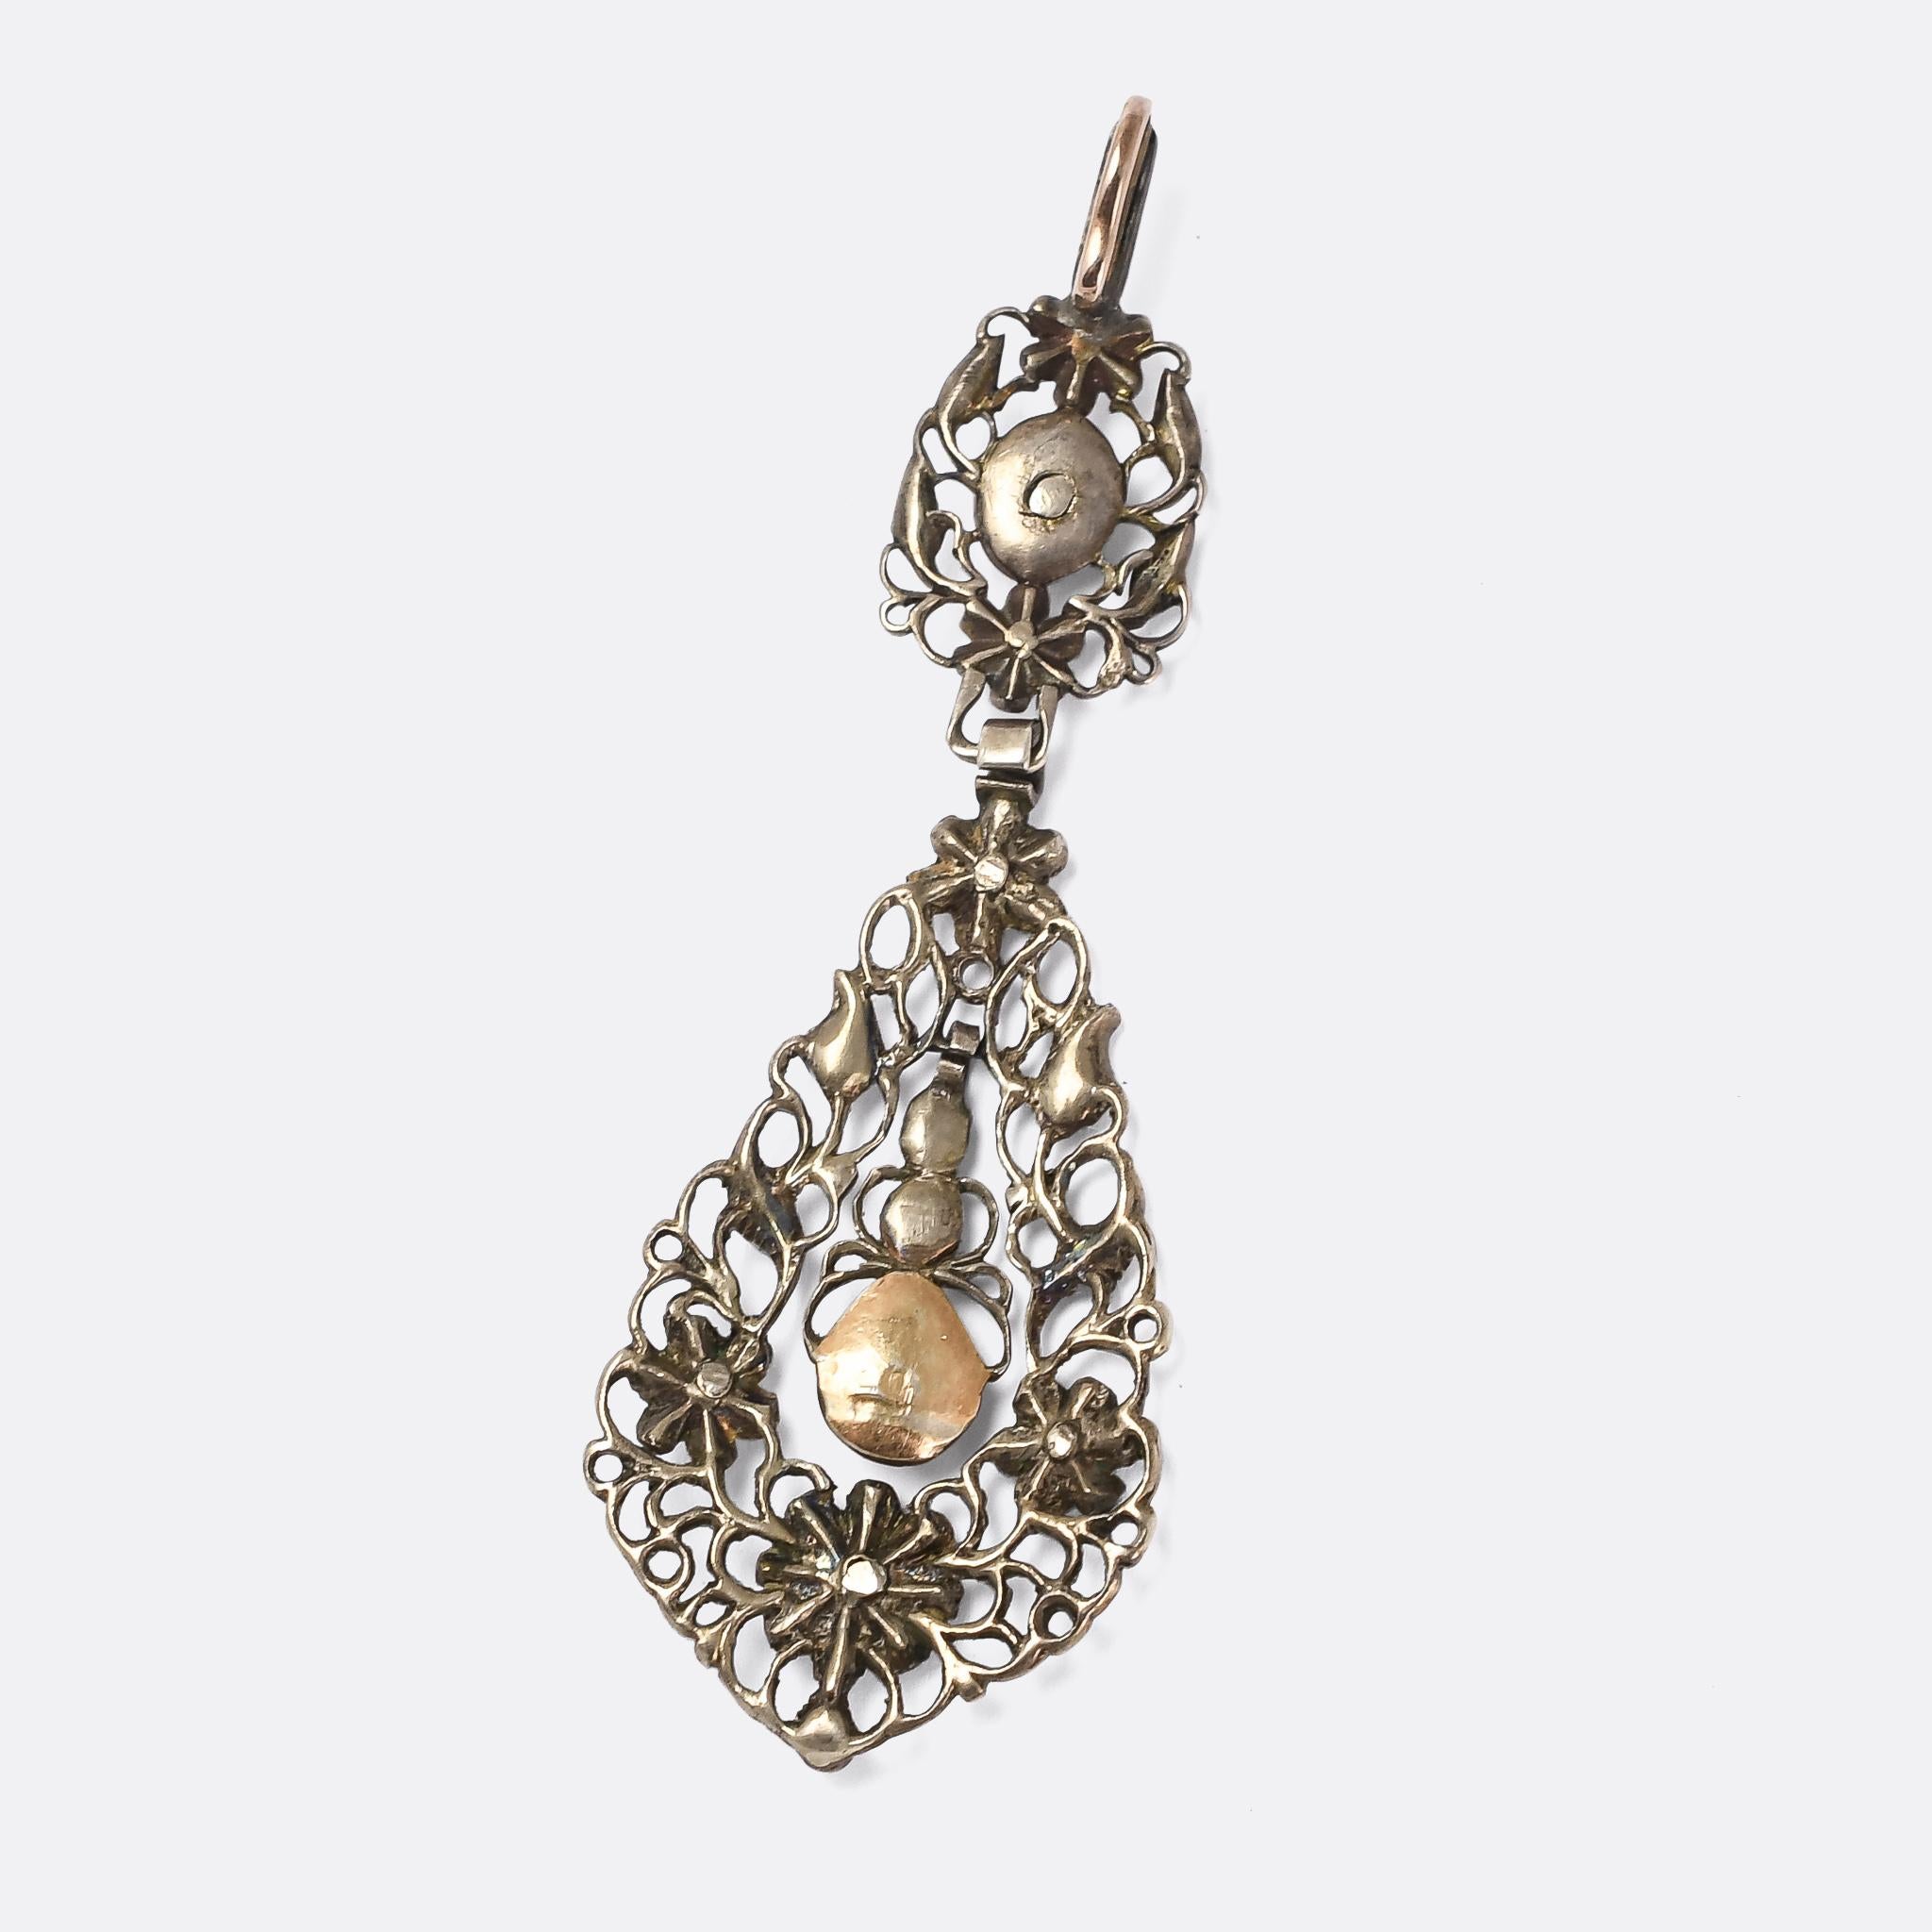 18th century pendant